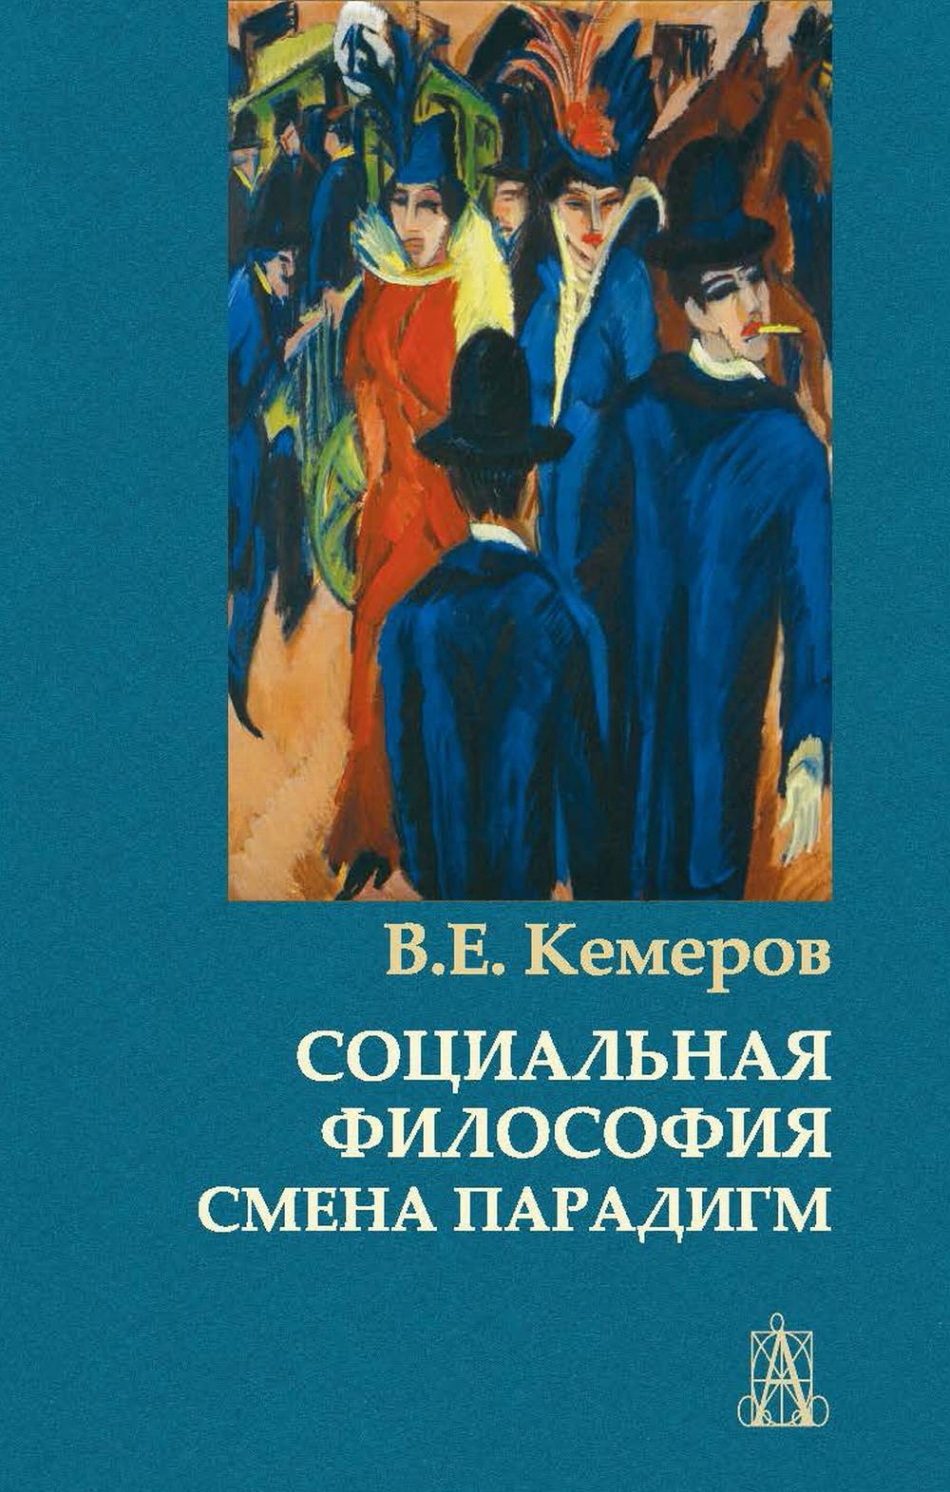 Кемеров В.Е. - Социальная философия: смена парадигм 